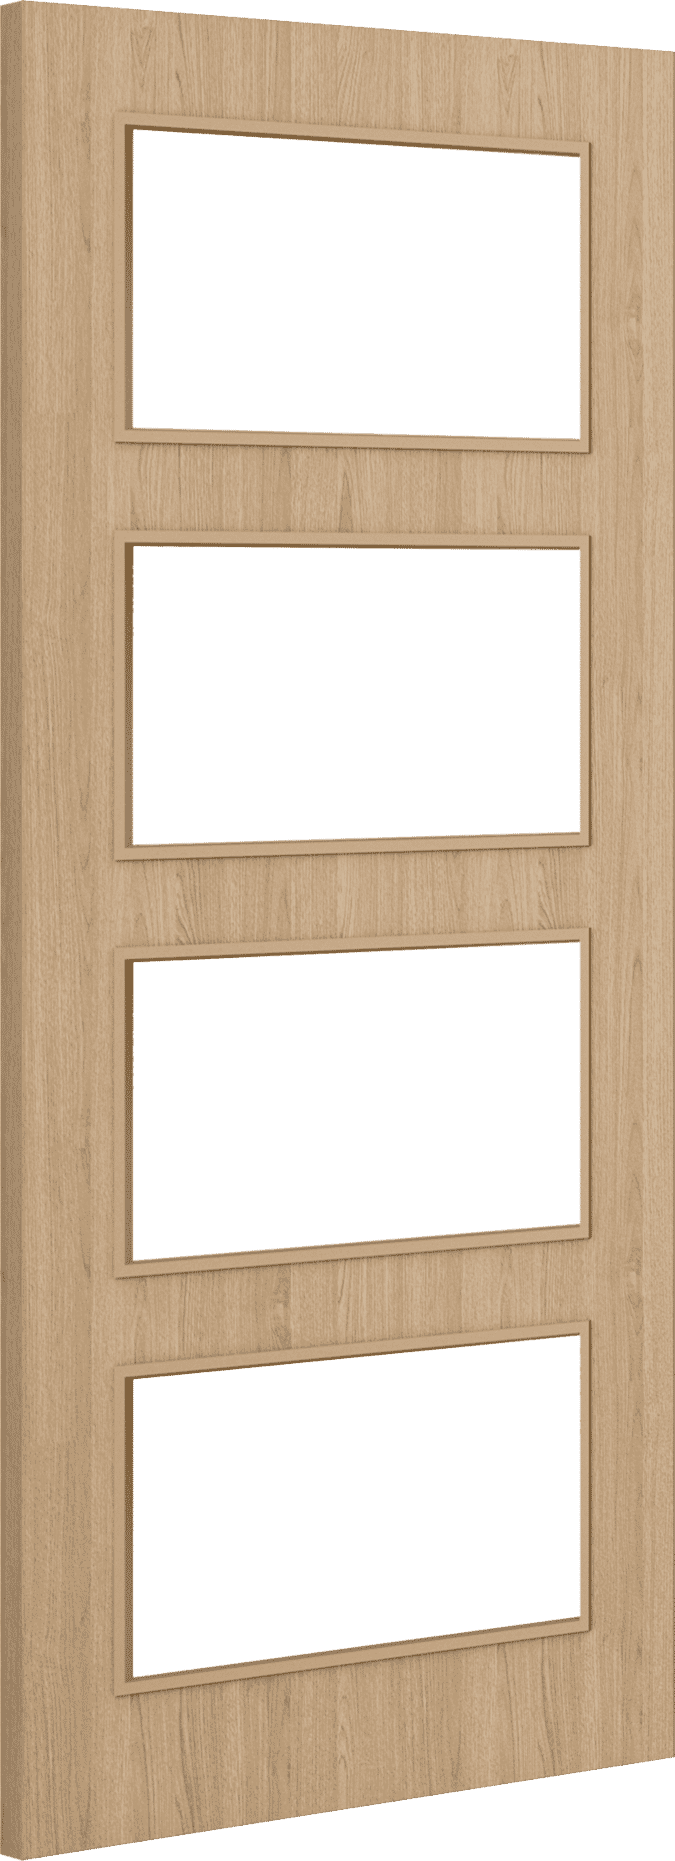 2040mm x 426mm x 44mm Architectural Oak 04 Clear Glazed - Prefinished FD30 Fire Door Blank